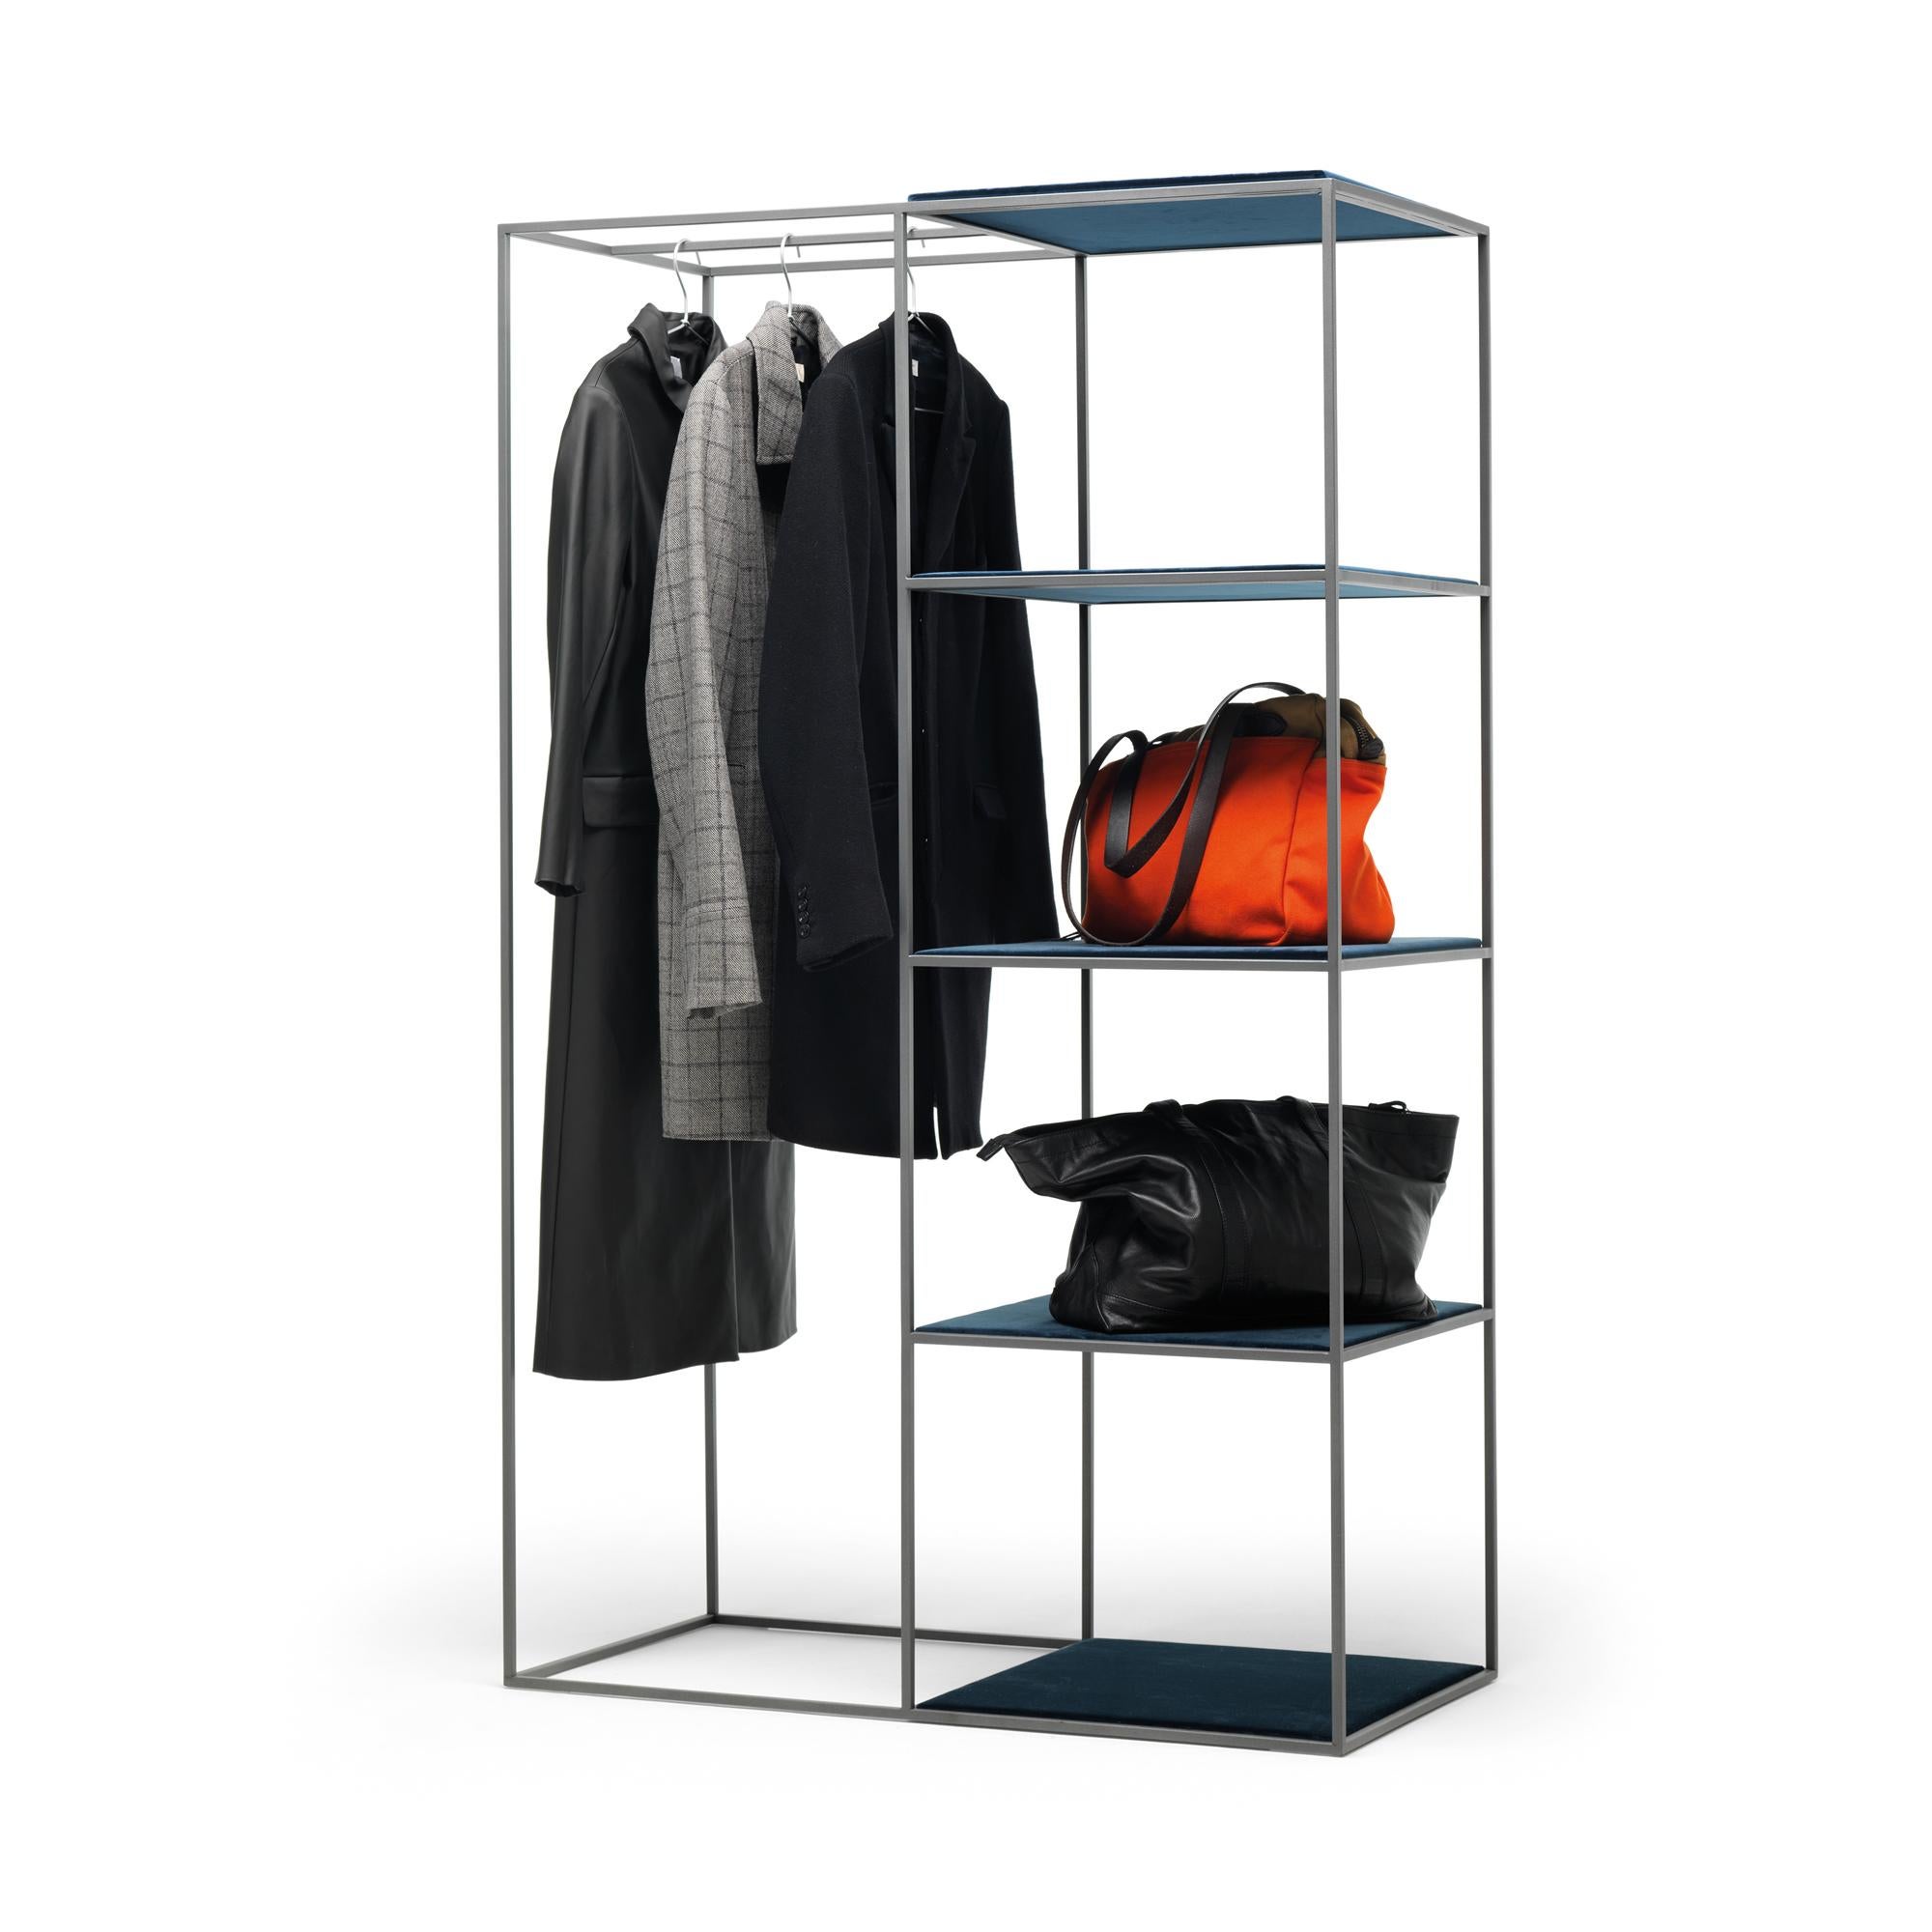 Die Gotham-Garderobe vereint die Funktionen eines Kleiderbügels und eines Regalsystems. Er kann sowohl zu Hause als auch in Geschäftsräumen verwendet werden, um sowohl hängende als auch gefaltete Kleidungsstücke zu präsentieren. Die Struktur ist